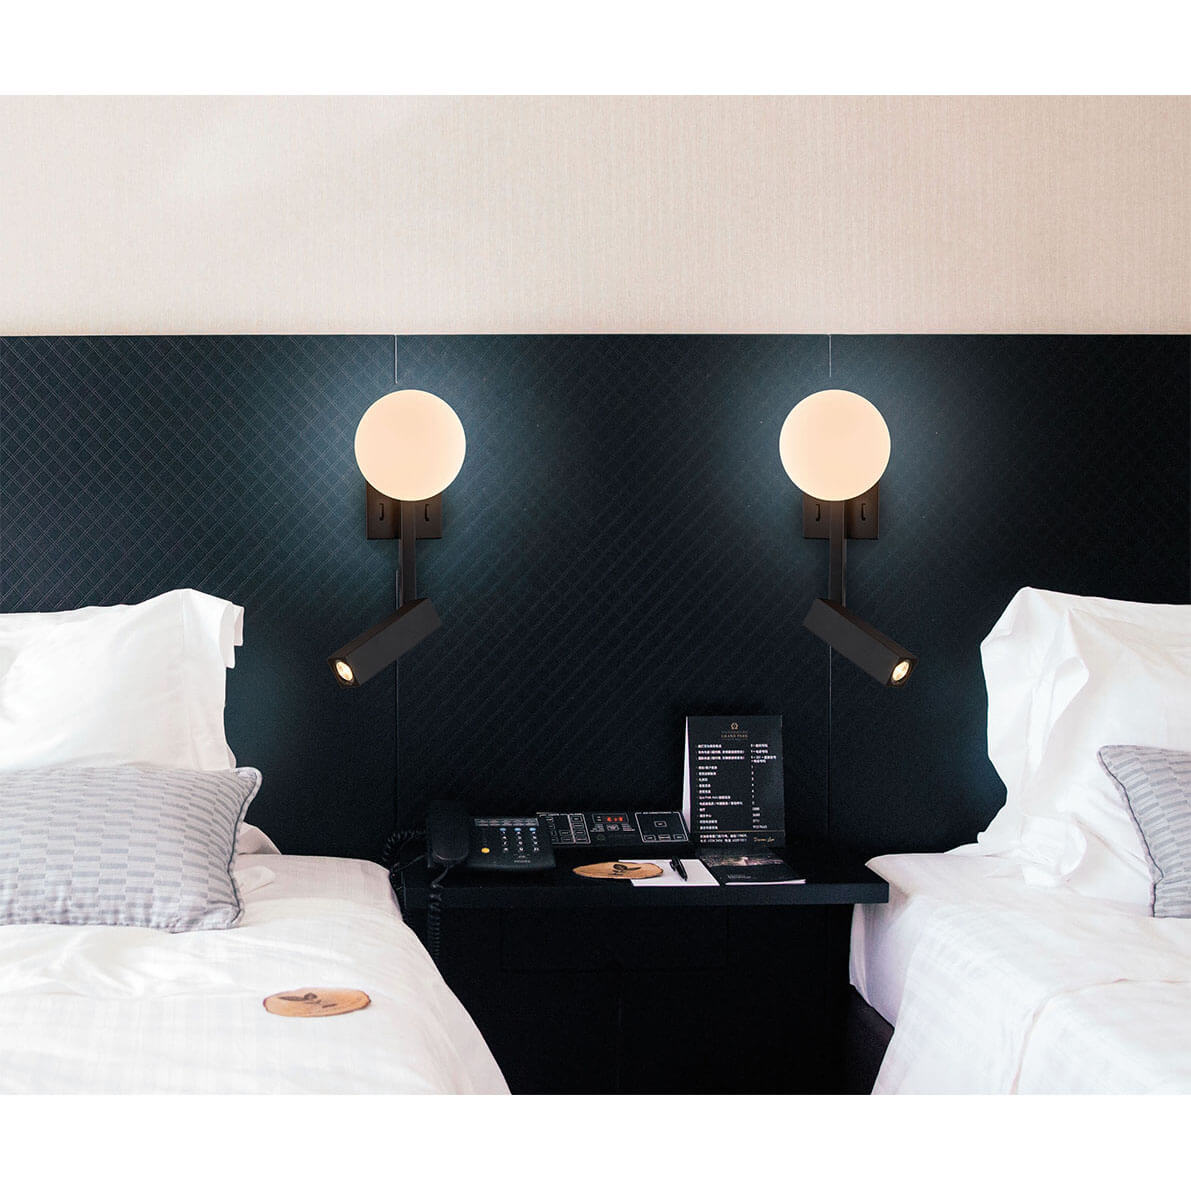 Cauti o aplica neagra ajustabila REFLECT cu LED  - pentru dormitor, living sau baie, design modern, futurist? Din colectia de lustre si corpuri de iluminat Domicilio